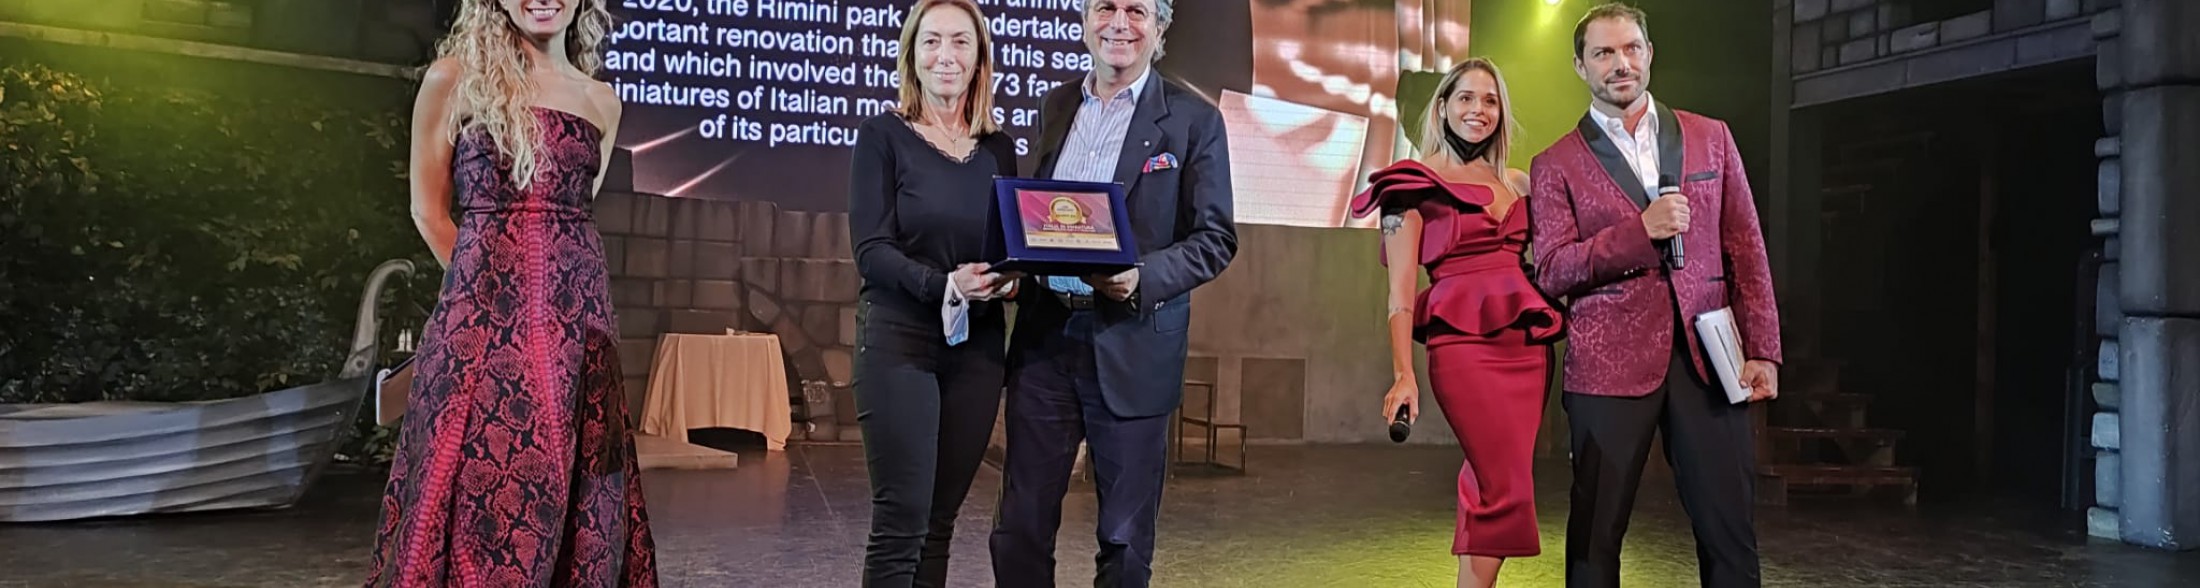 Italia in Miniatura e i parchi Costa vincono 3 premi ai Parksmania Awards 2021